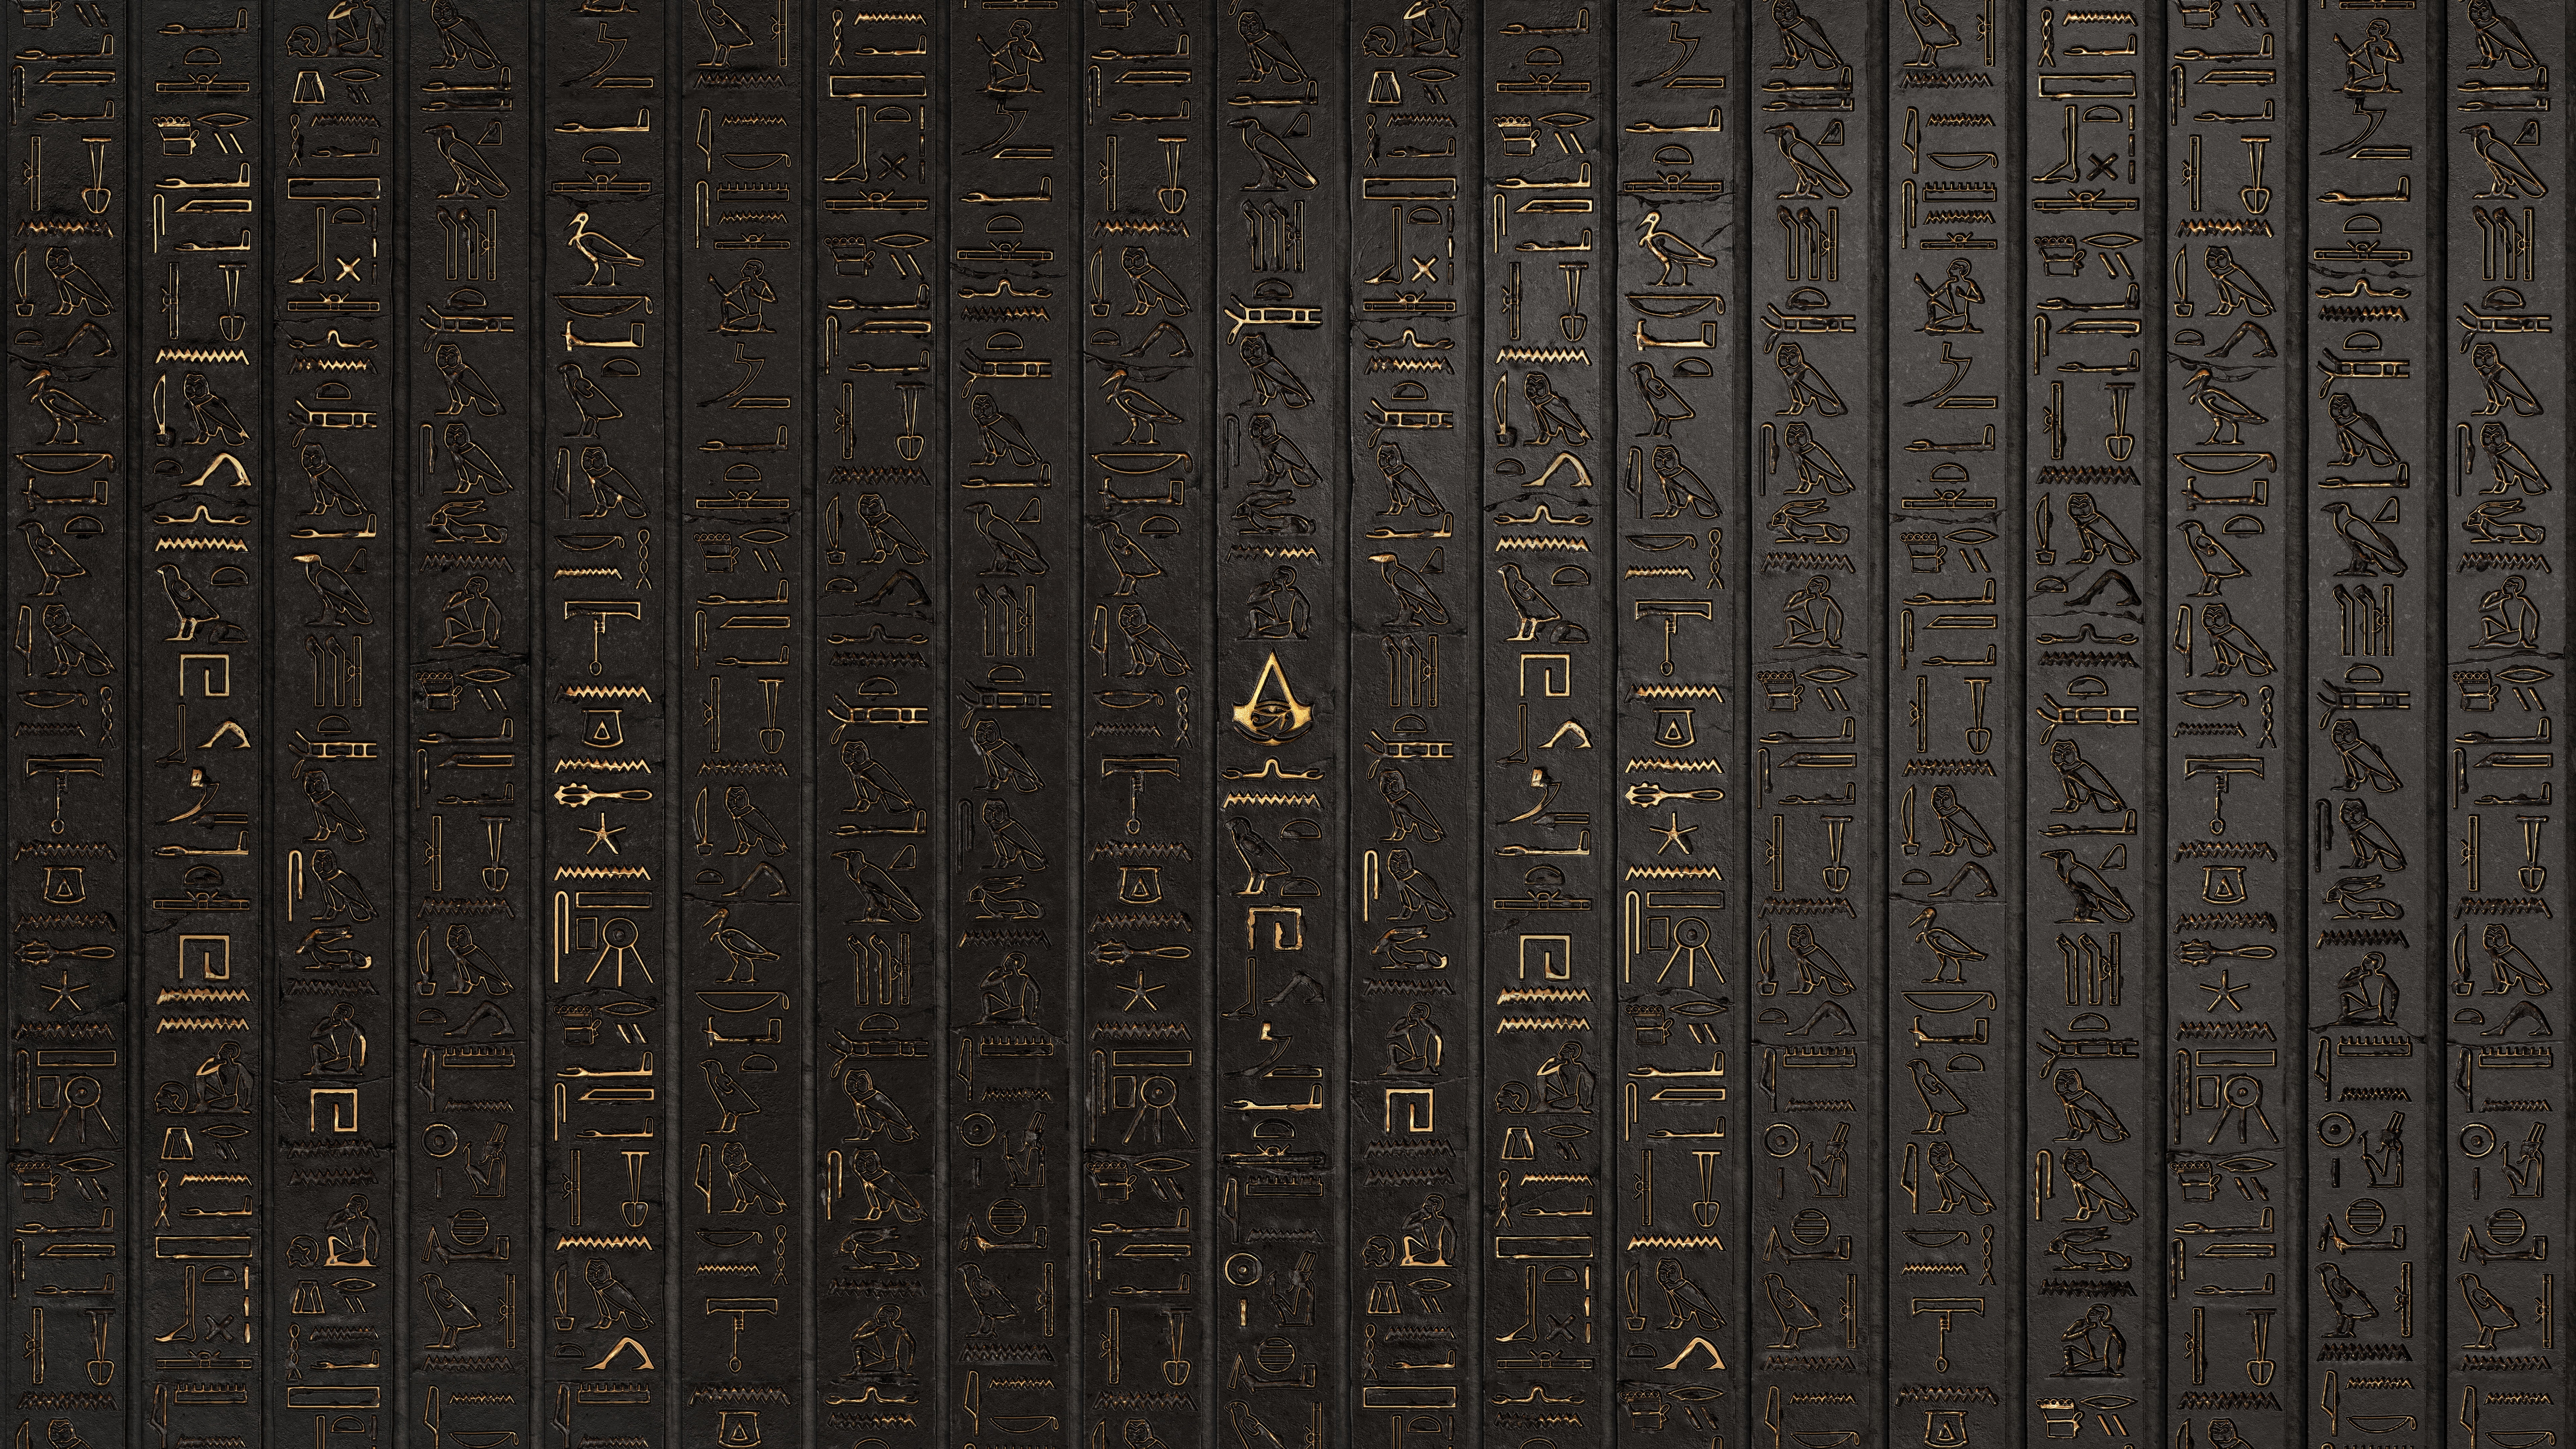 Hieroglyphics, digital art, artwork, video games, Assassin's Creed